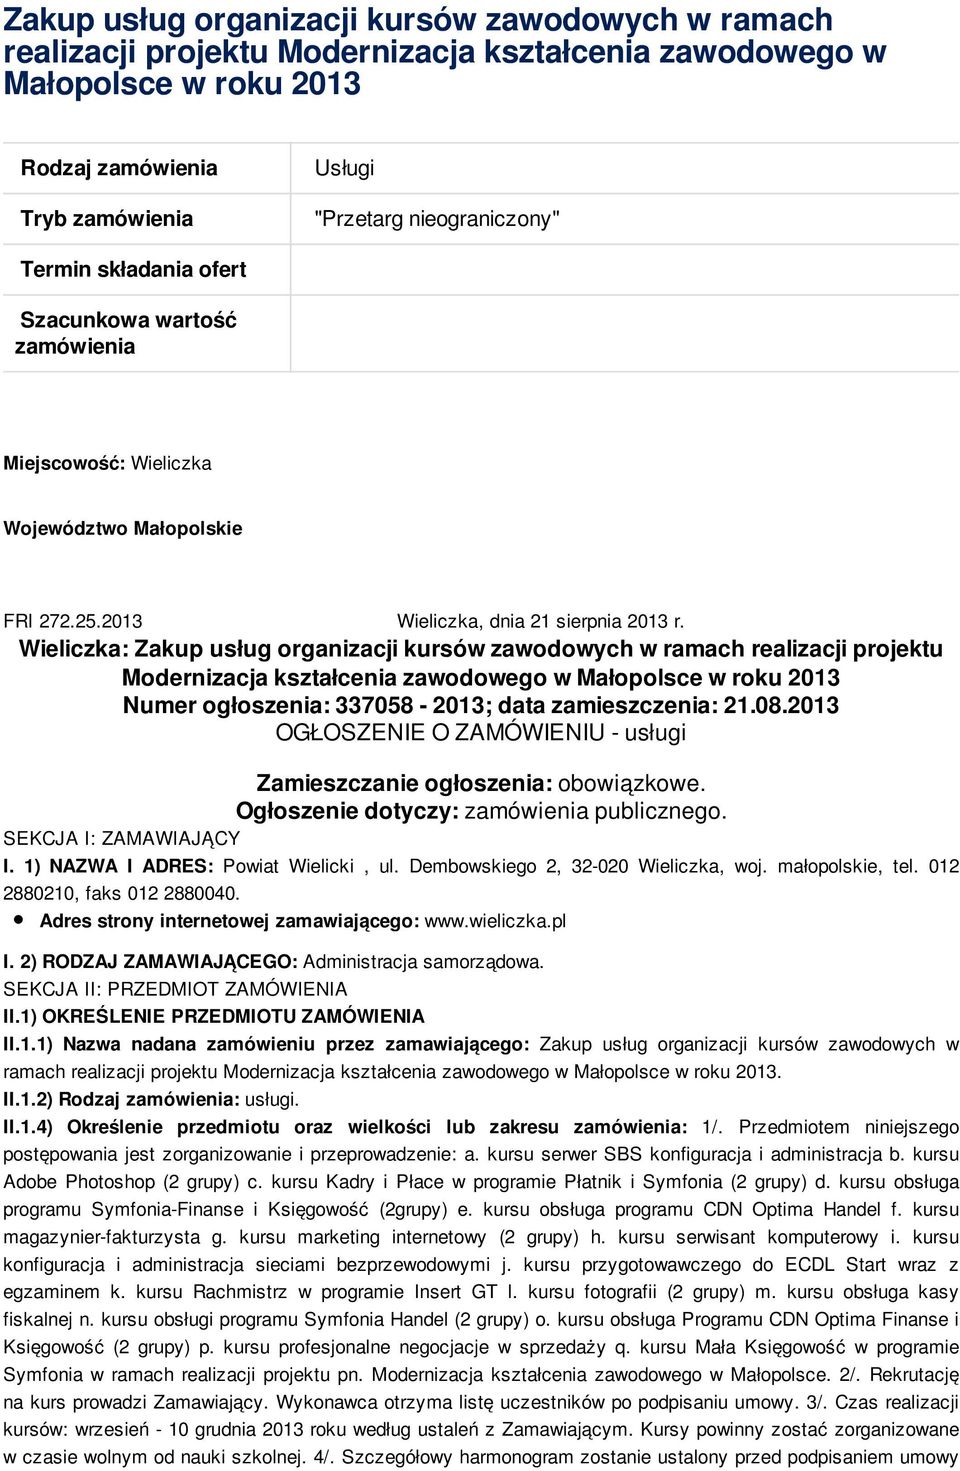 Wieliczka: Zakup usług organizacji kursów zawodowych w ramach realizacji projektu Modernizacja kształcenia zawodowego w Małopolsce w roku 2013 Numer ogłoszenia: 337058-2013; data zamieszczenia: 21.08.